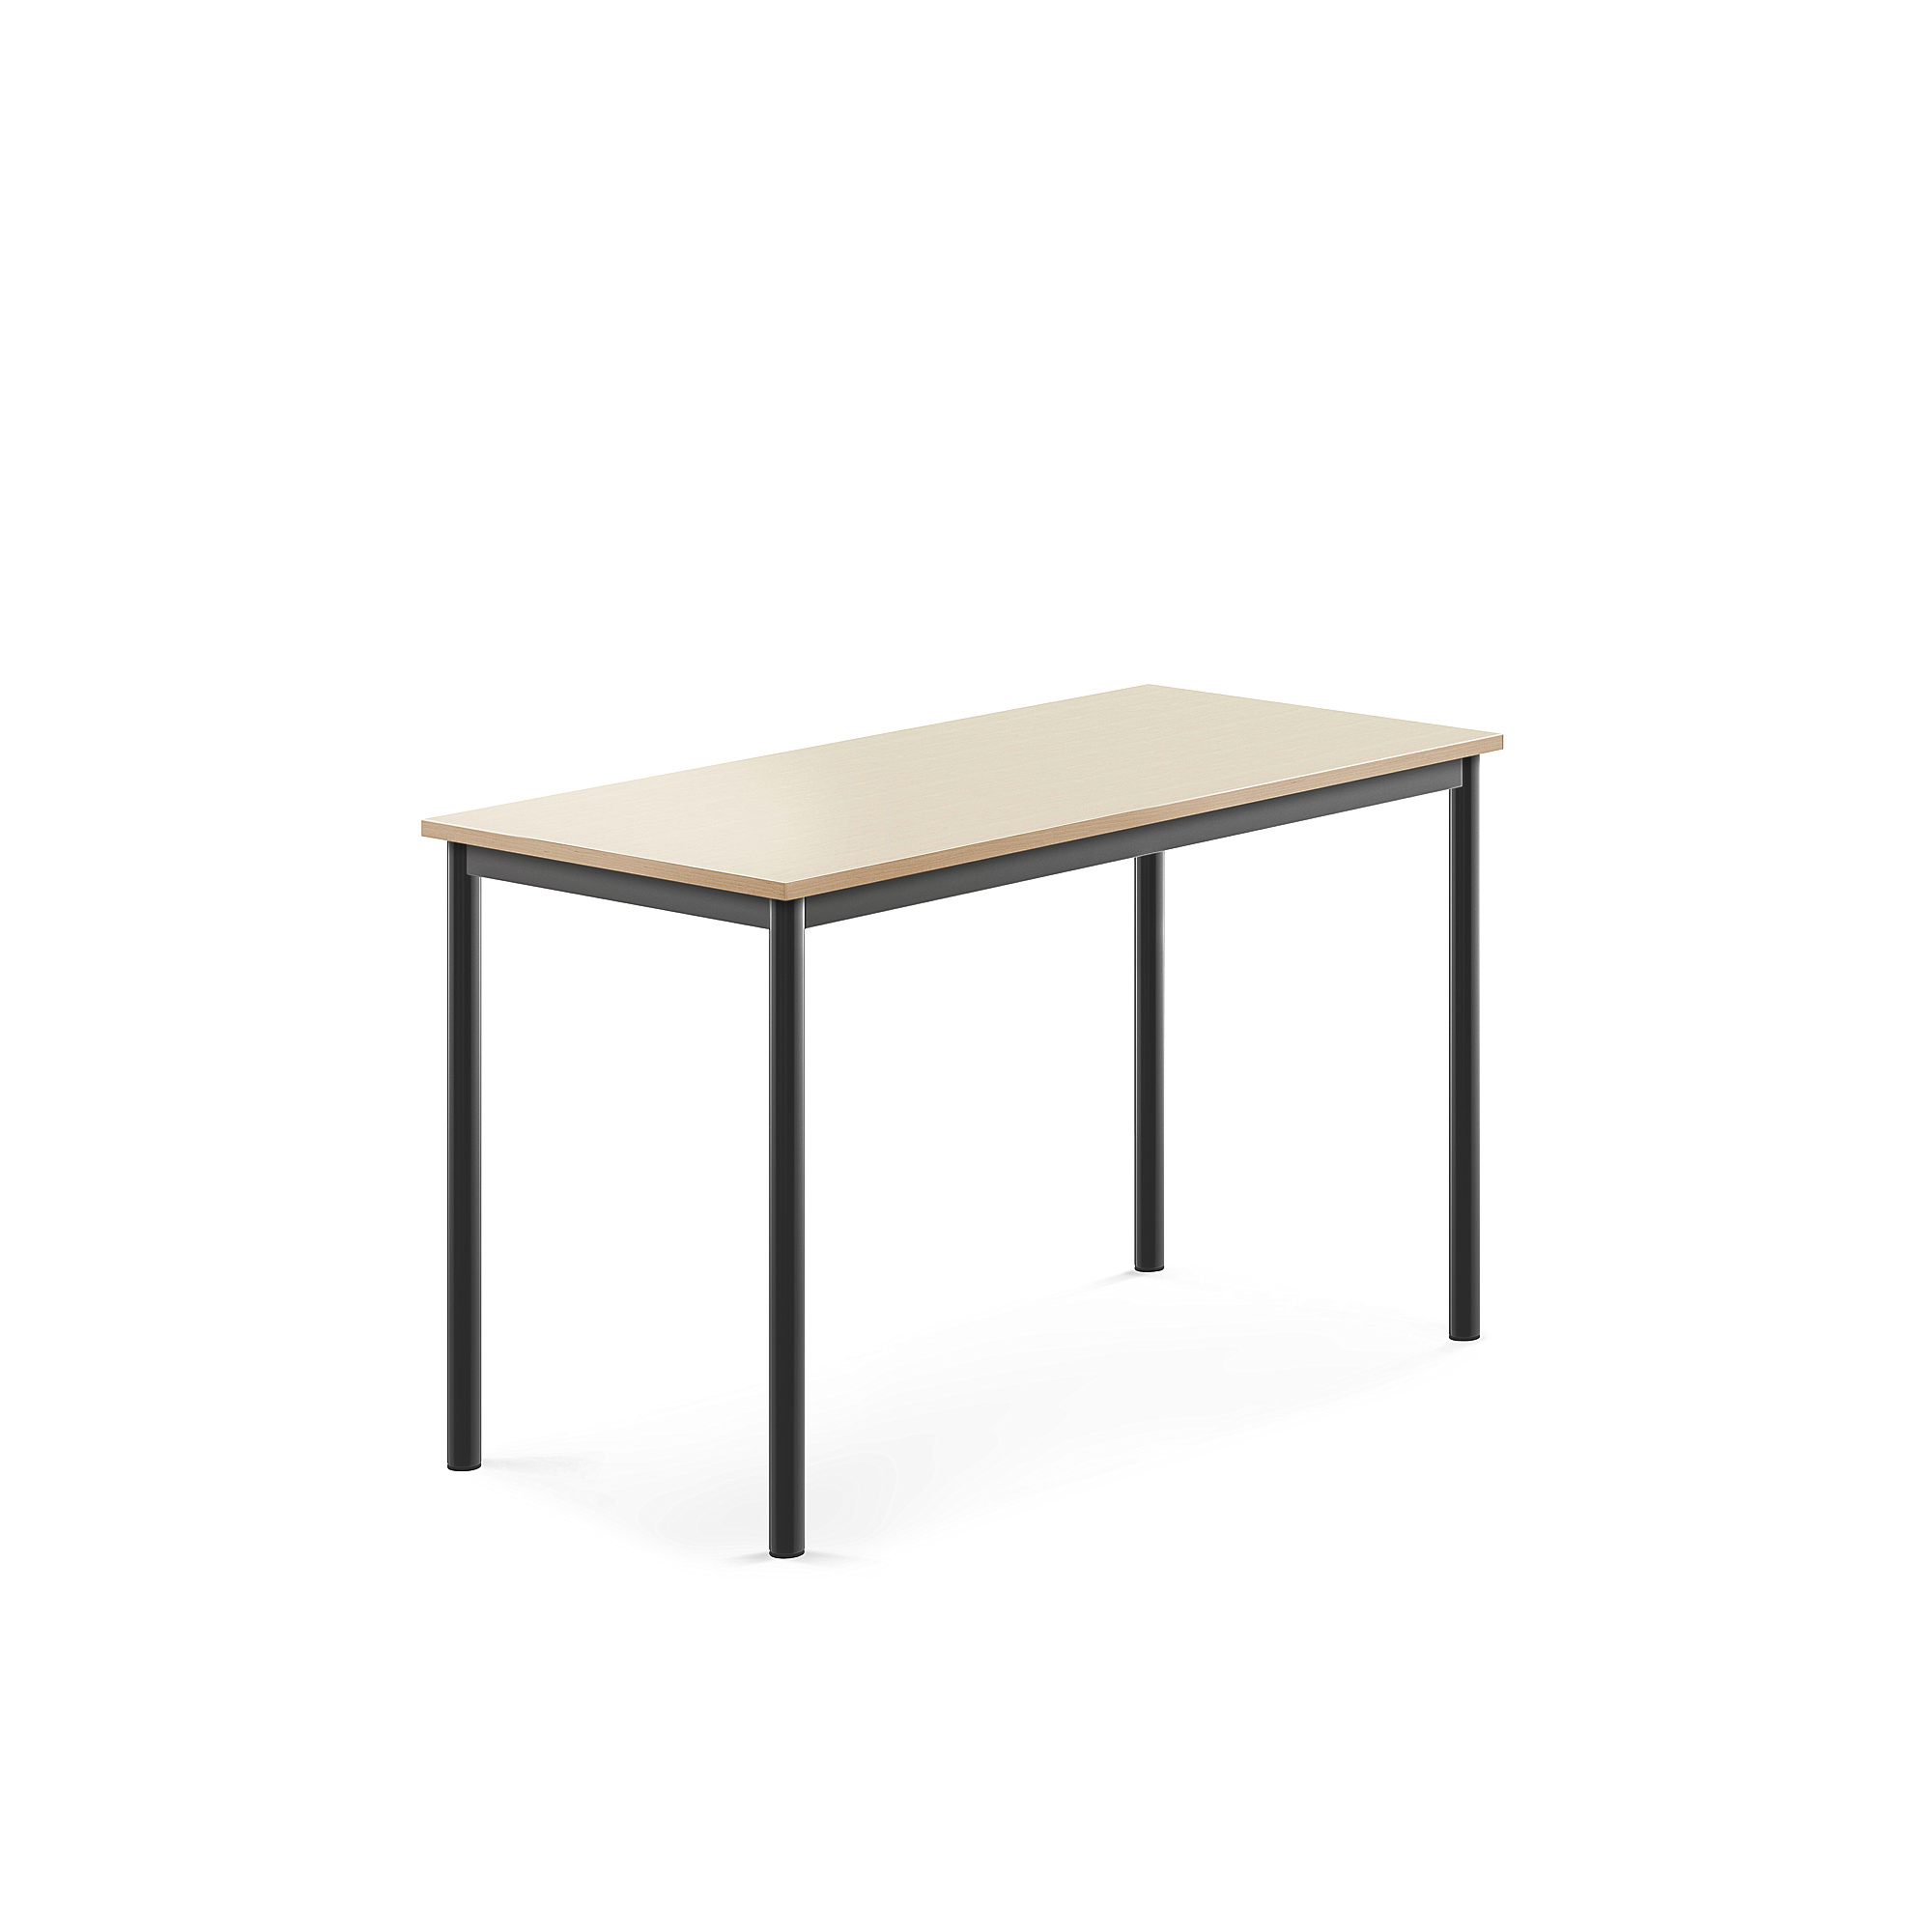 Stůl SONITUS, 1200x600x720 mm, antracitově šedé nohy, HPL deska tlumící hluk, bříza